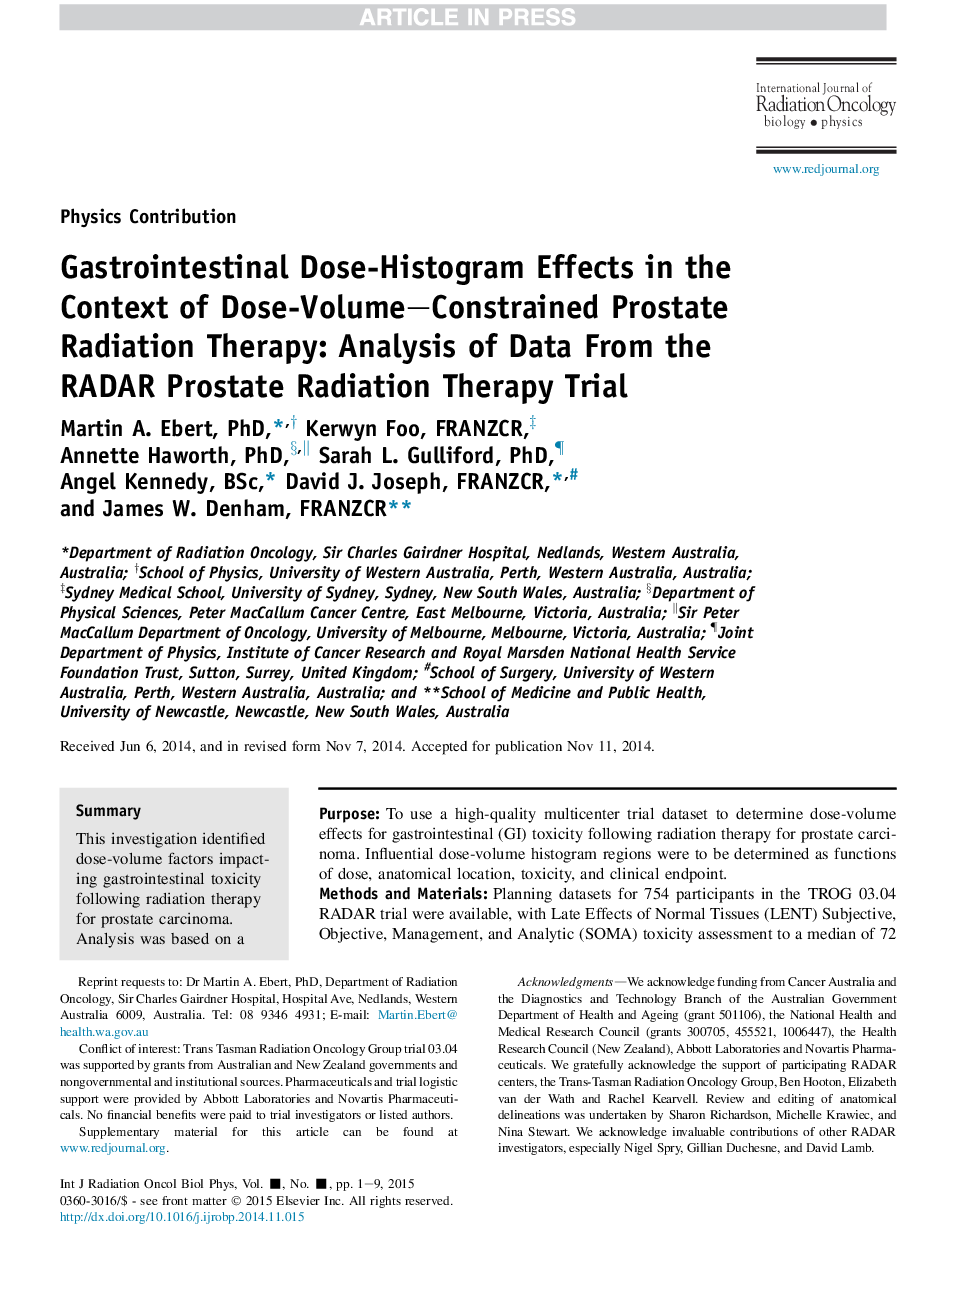 اثر هیستوگرام دوز معده و روده در زمینه درمان تابش پروتئینی محدود شده با حجم با دوز: تجزیه و تحلیل داده ها از دادگاه رادیوتراپی رادیو پروستات 